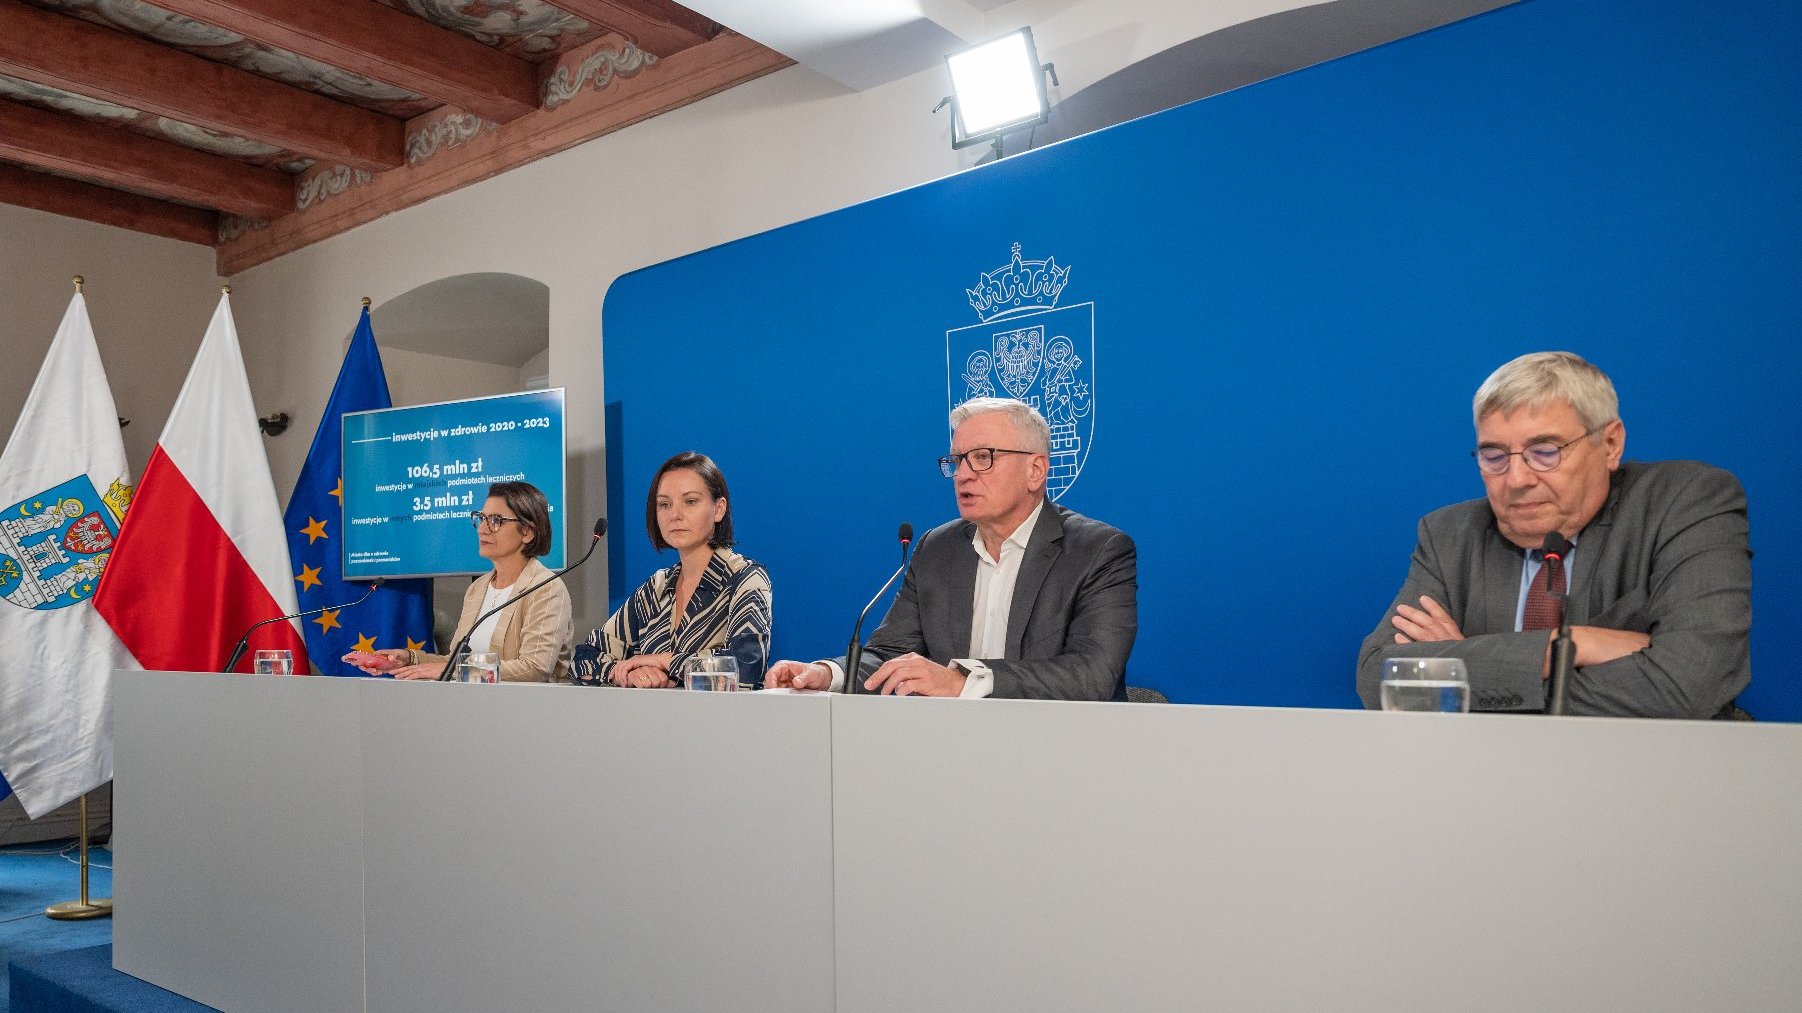 Na zdjęciu cztery osoby za stołem konferencyjnym - dwie kobiety i dwóch mężczyzn